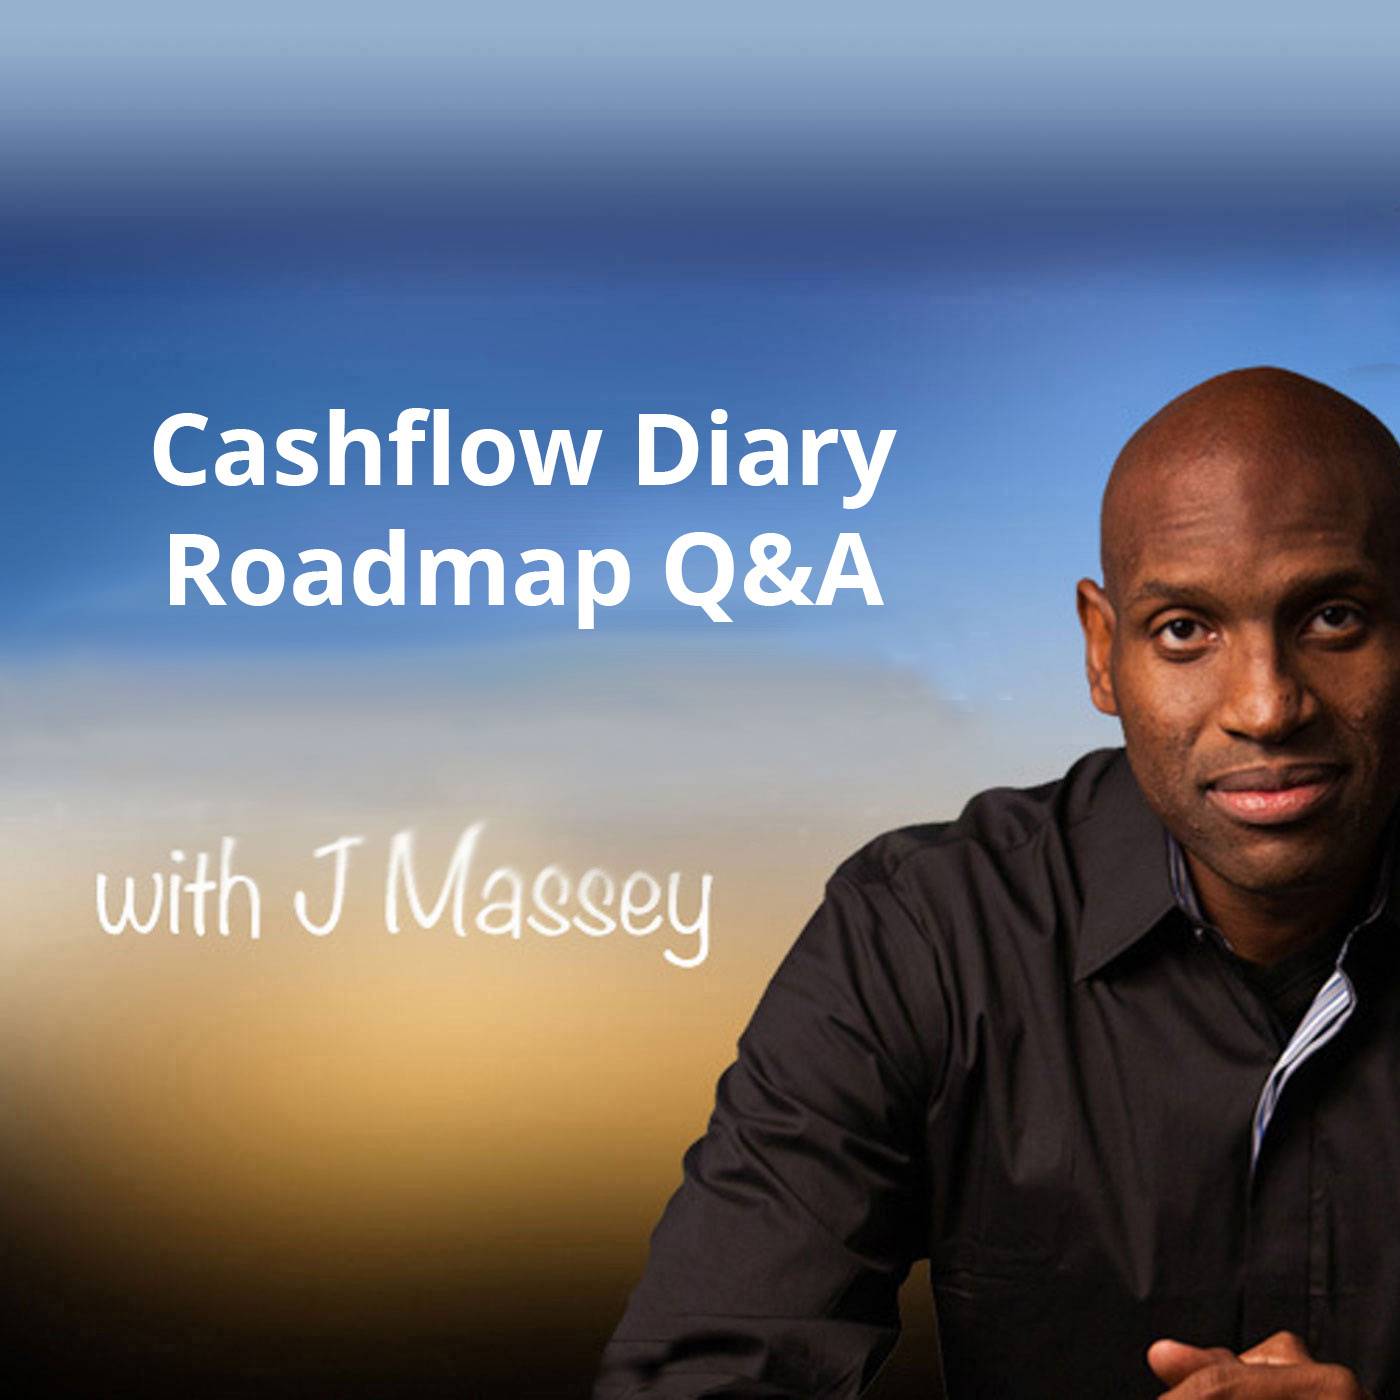 Cashflow Diary Roadmap